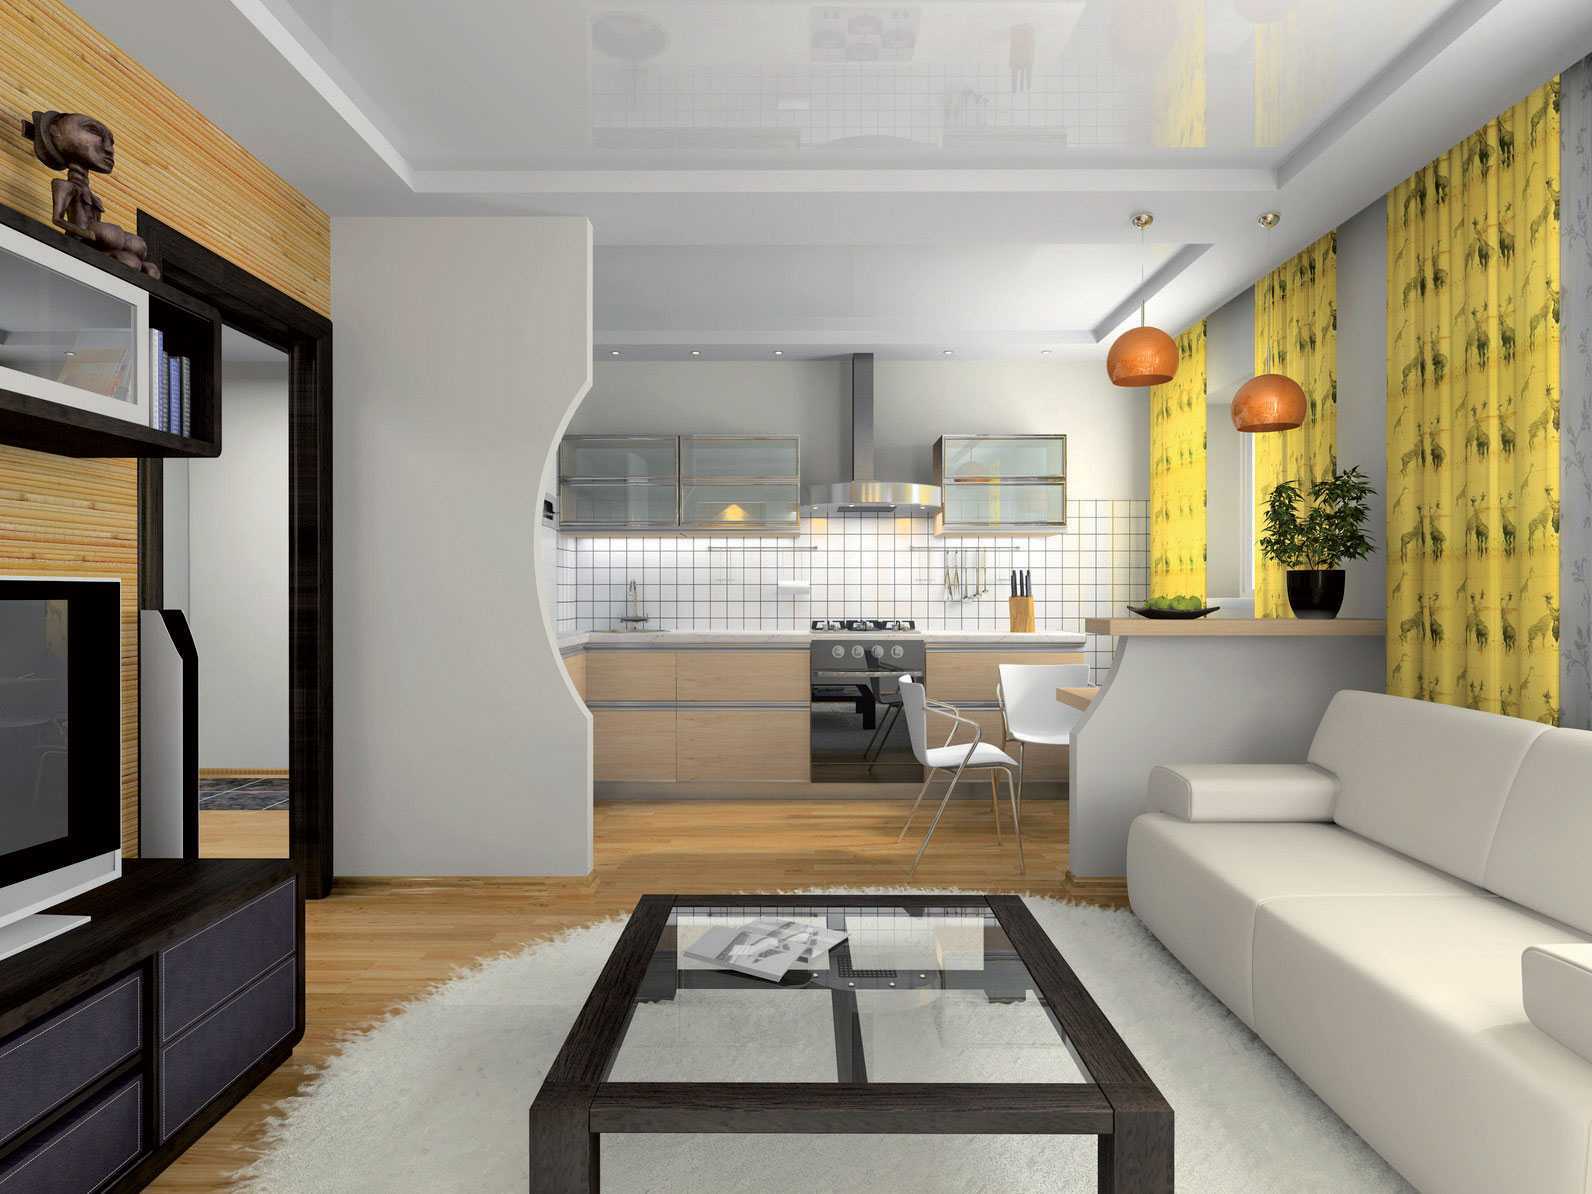 Кухня 18 кв. м. - 125 фото лучших идей дизайна, правила зонирования и расстановки мебеливарианты планировки и дизайна